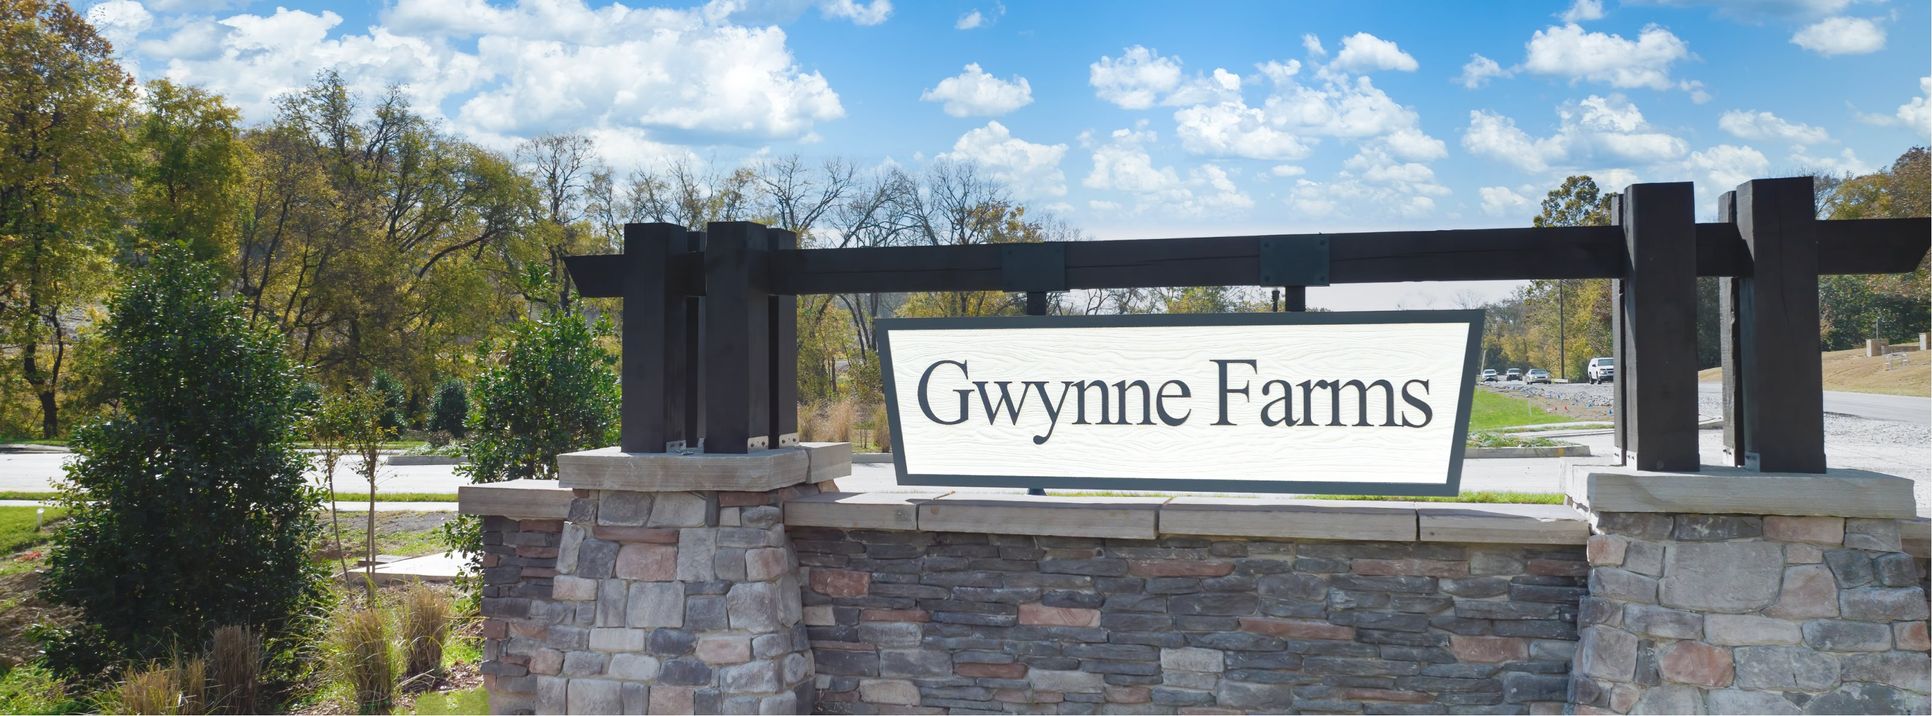 Gwynne Farms - Cambridge Collection,37167